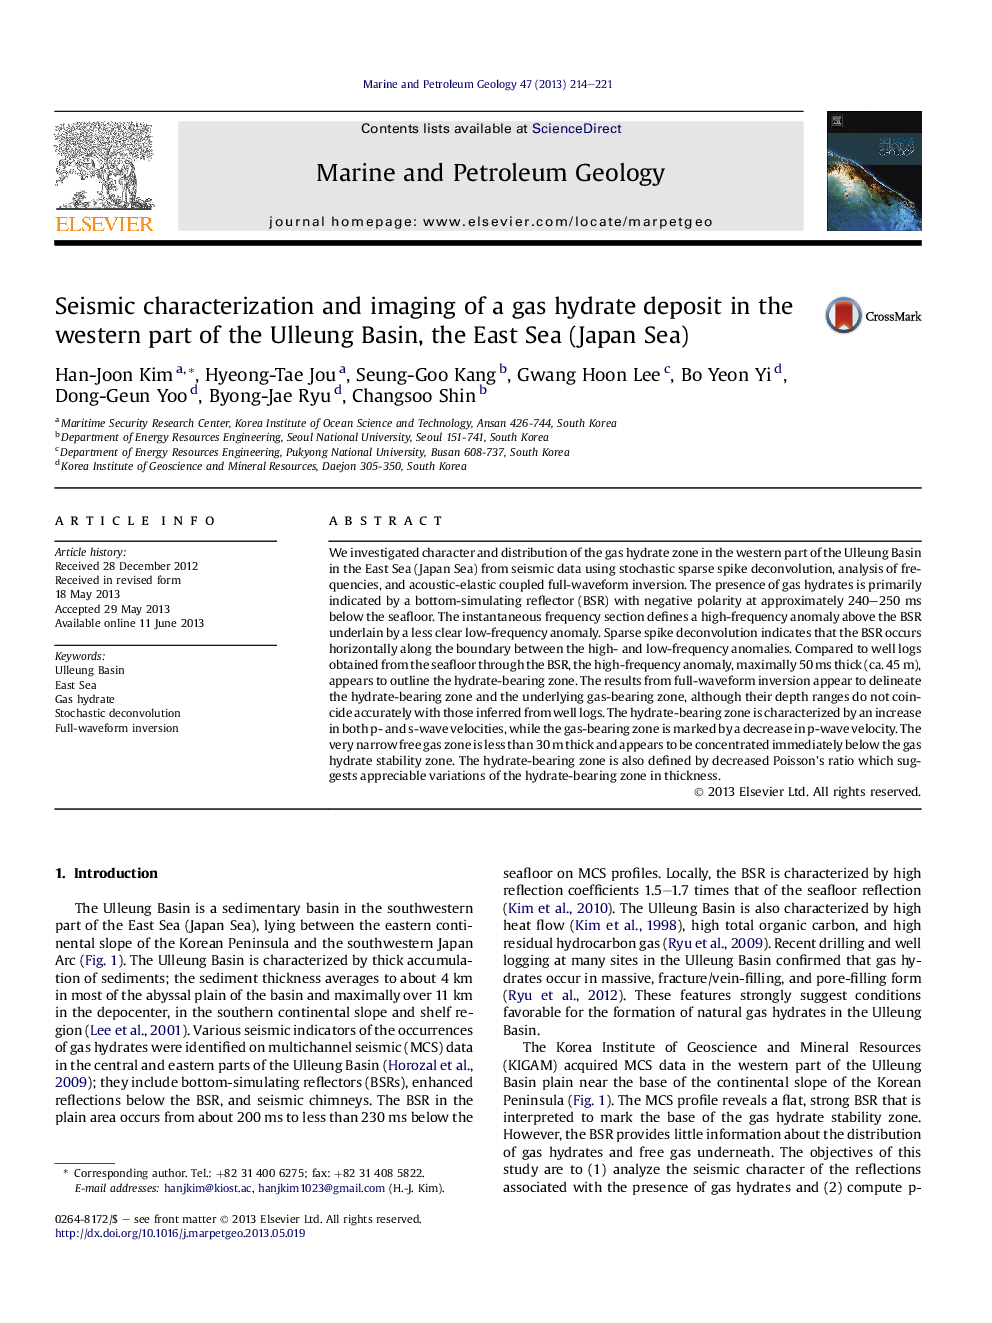 مشخصات لرزه ای و تصویربرداری از ذخایر هیدرات گاز در قسمت غربی حوضه یولئونگ، دریای شرق (دریای ژاپن) 